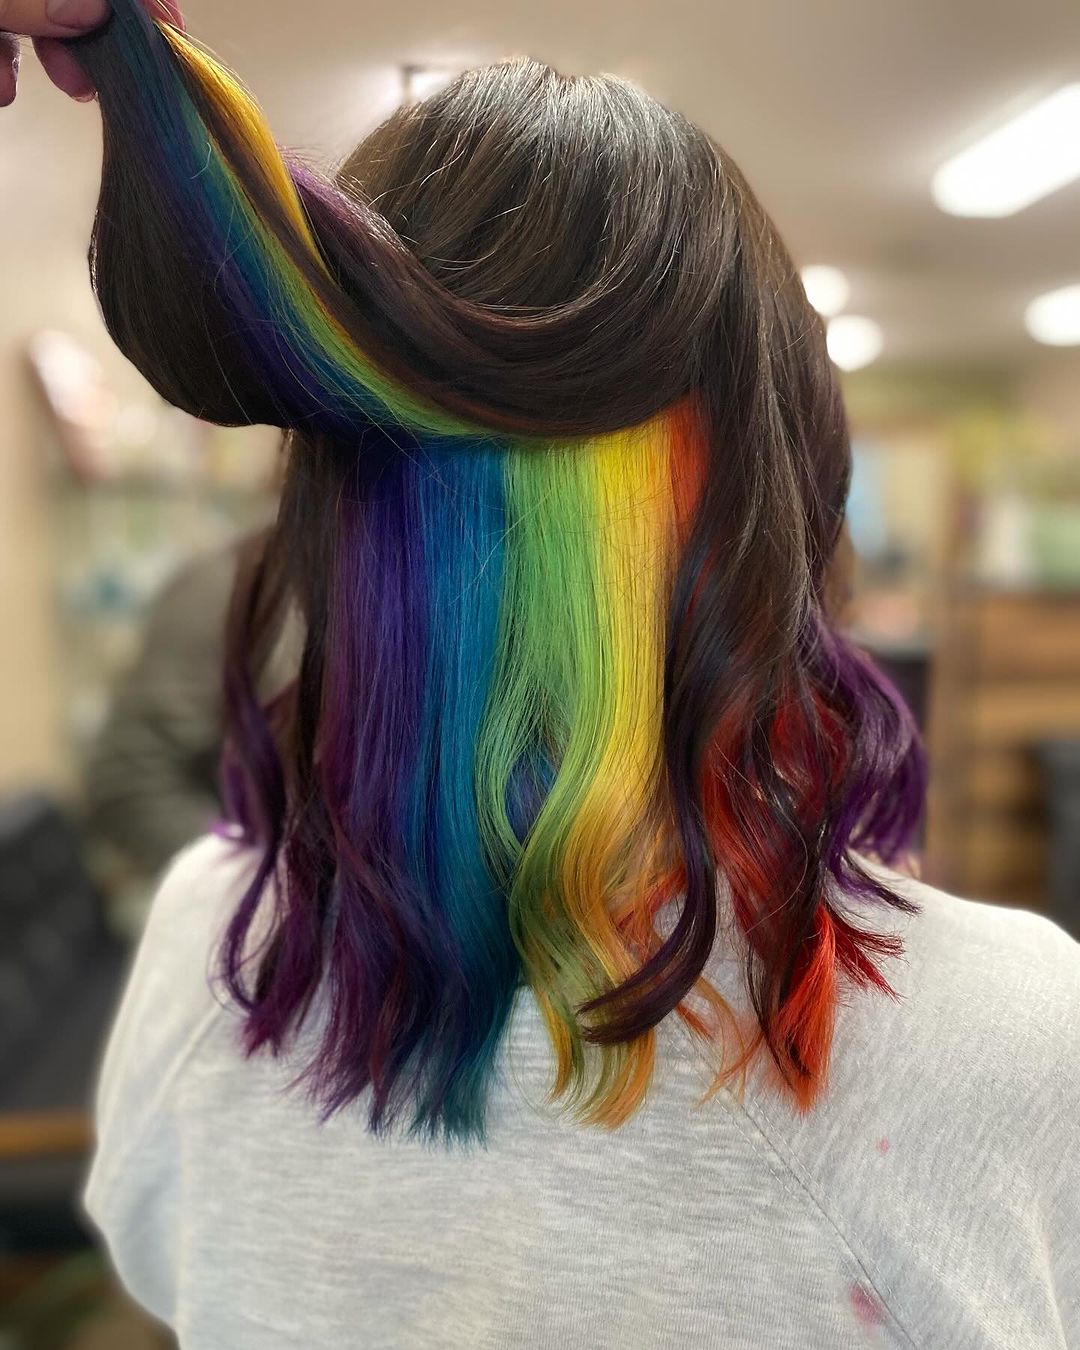 arco iris oculto en el pelo moreno